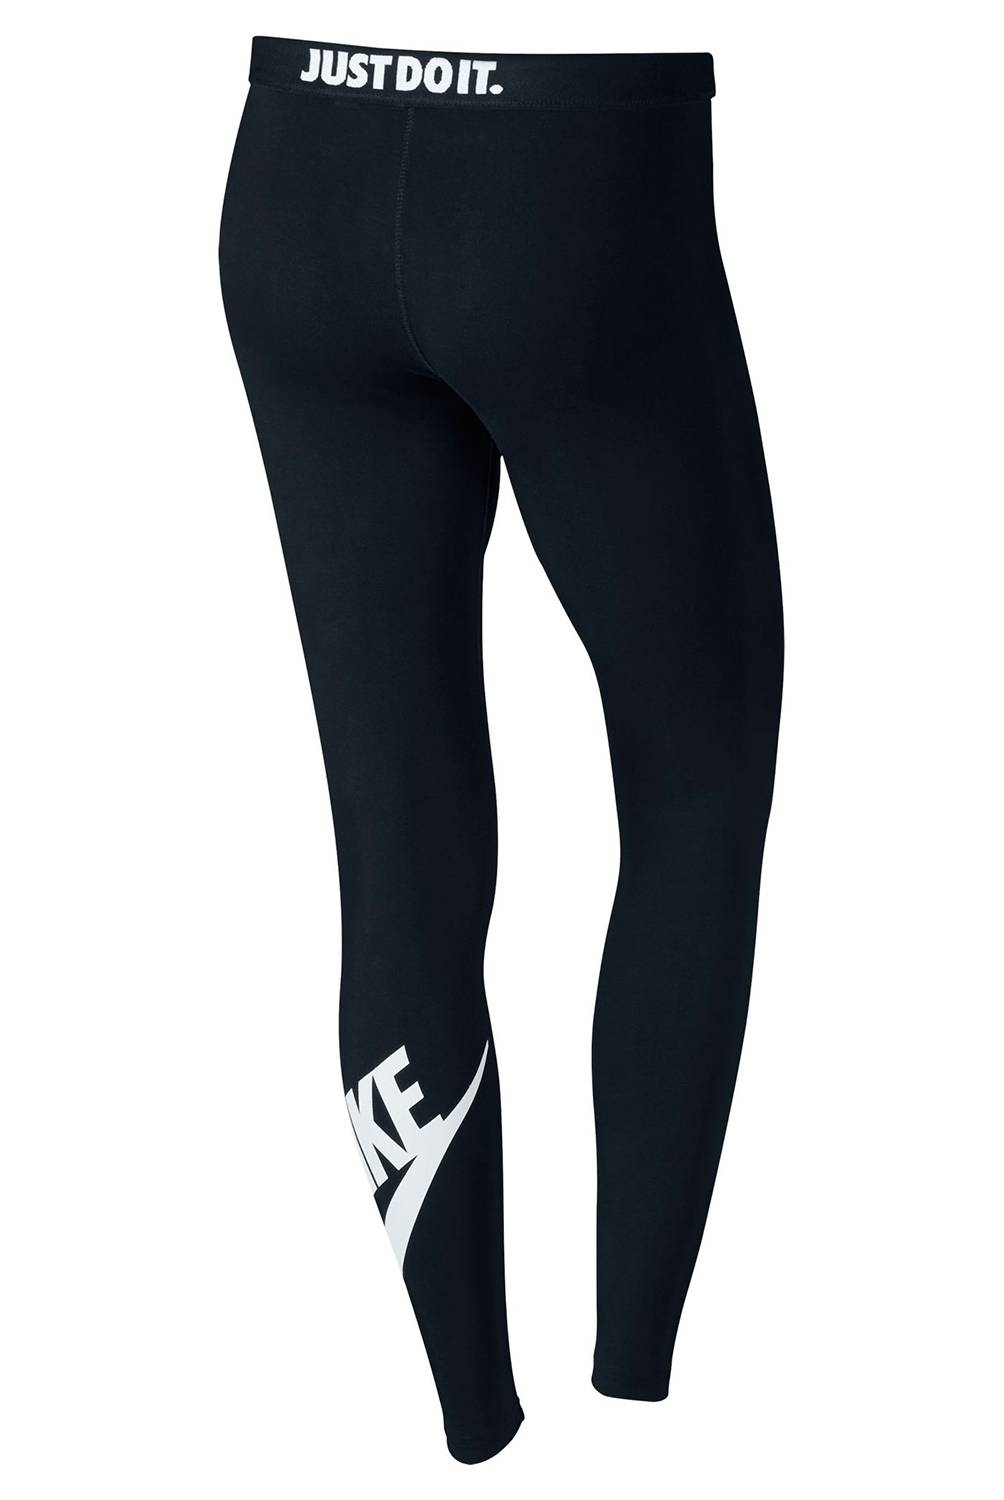 Nike - Calza Mujer Leg A See Logo